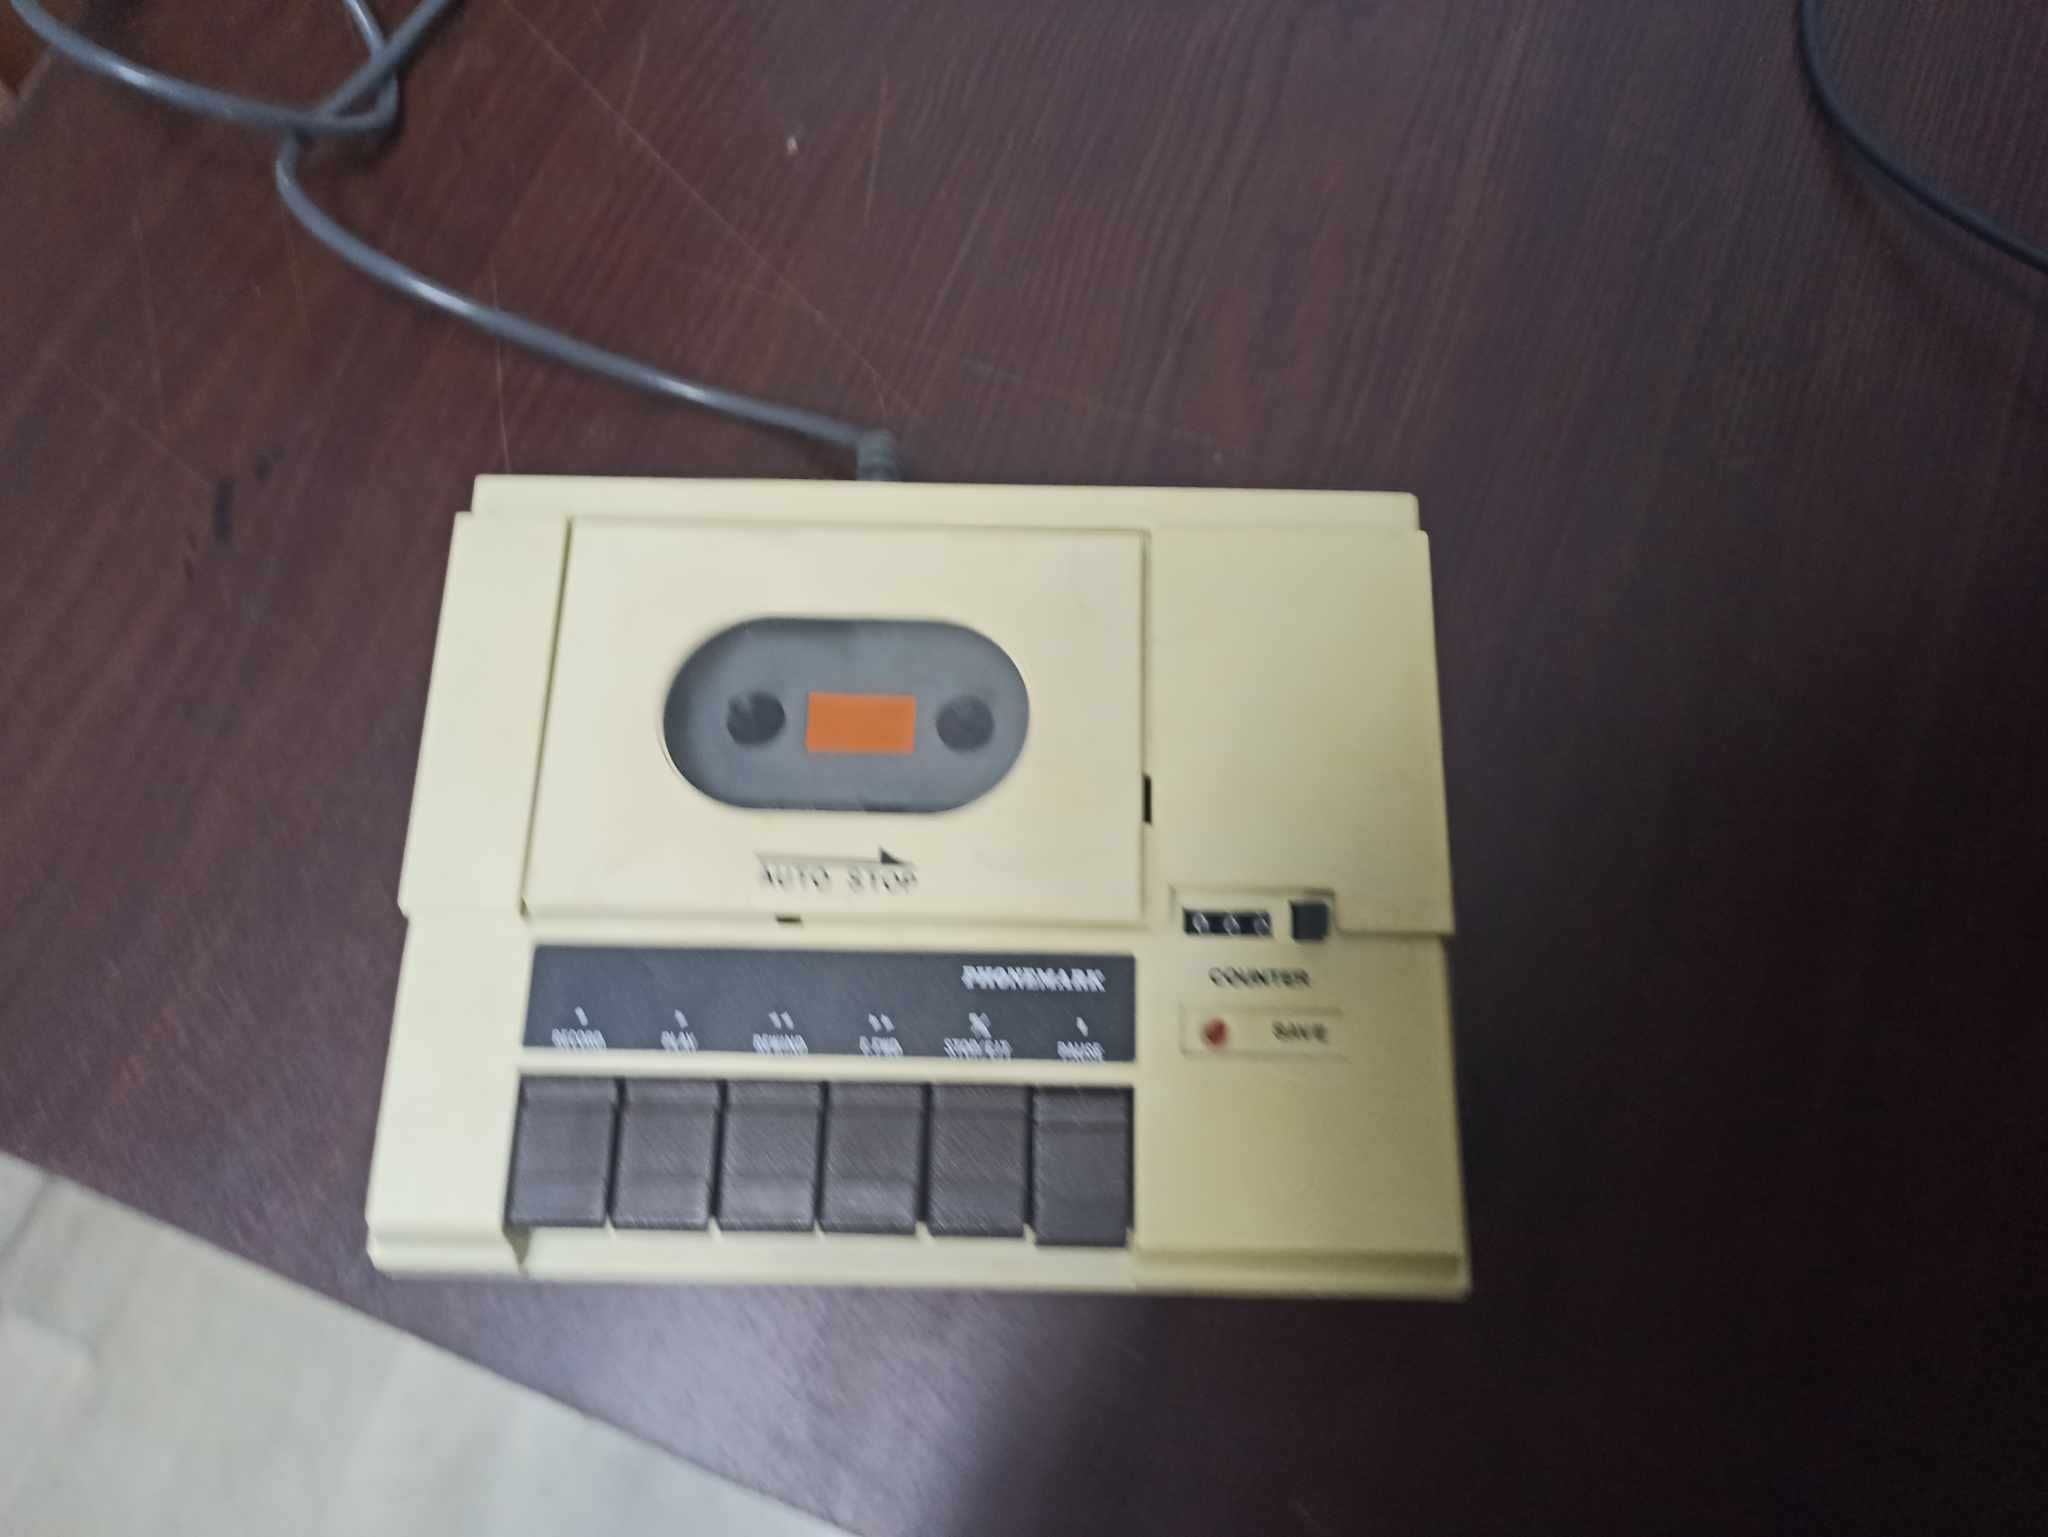 Datasette PM4401 C Commodore